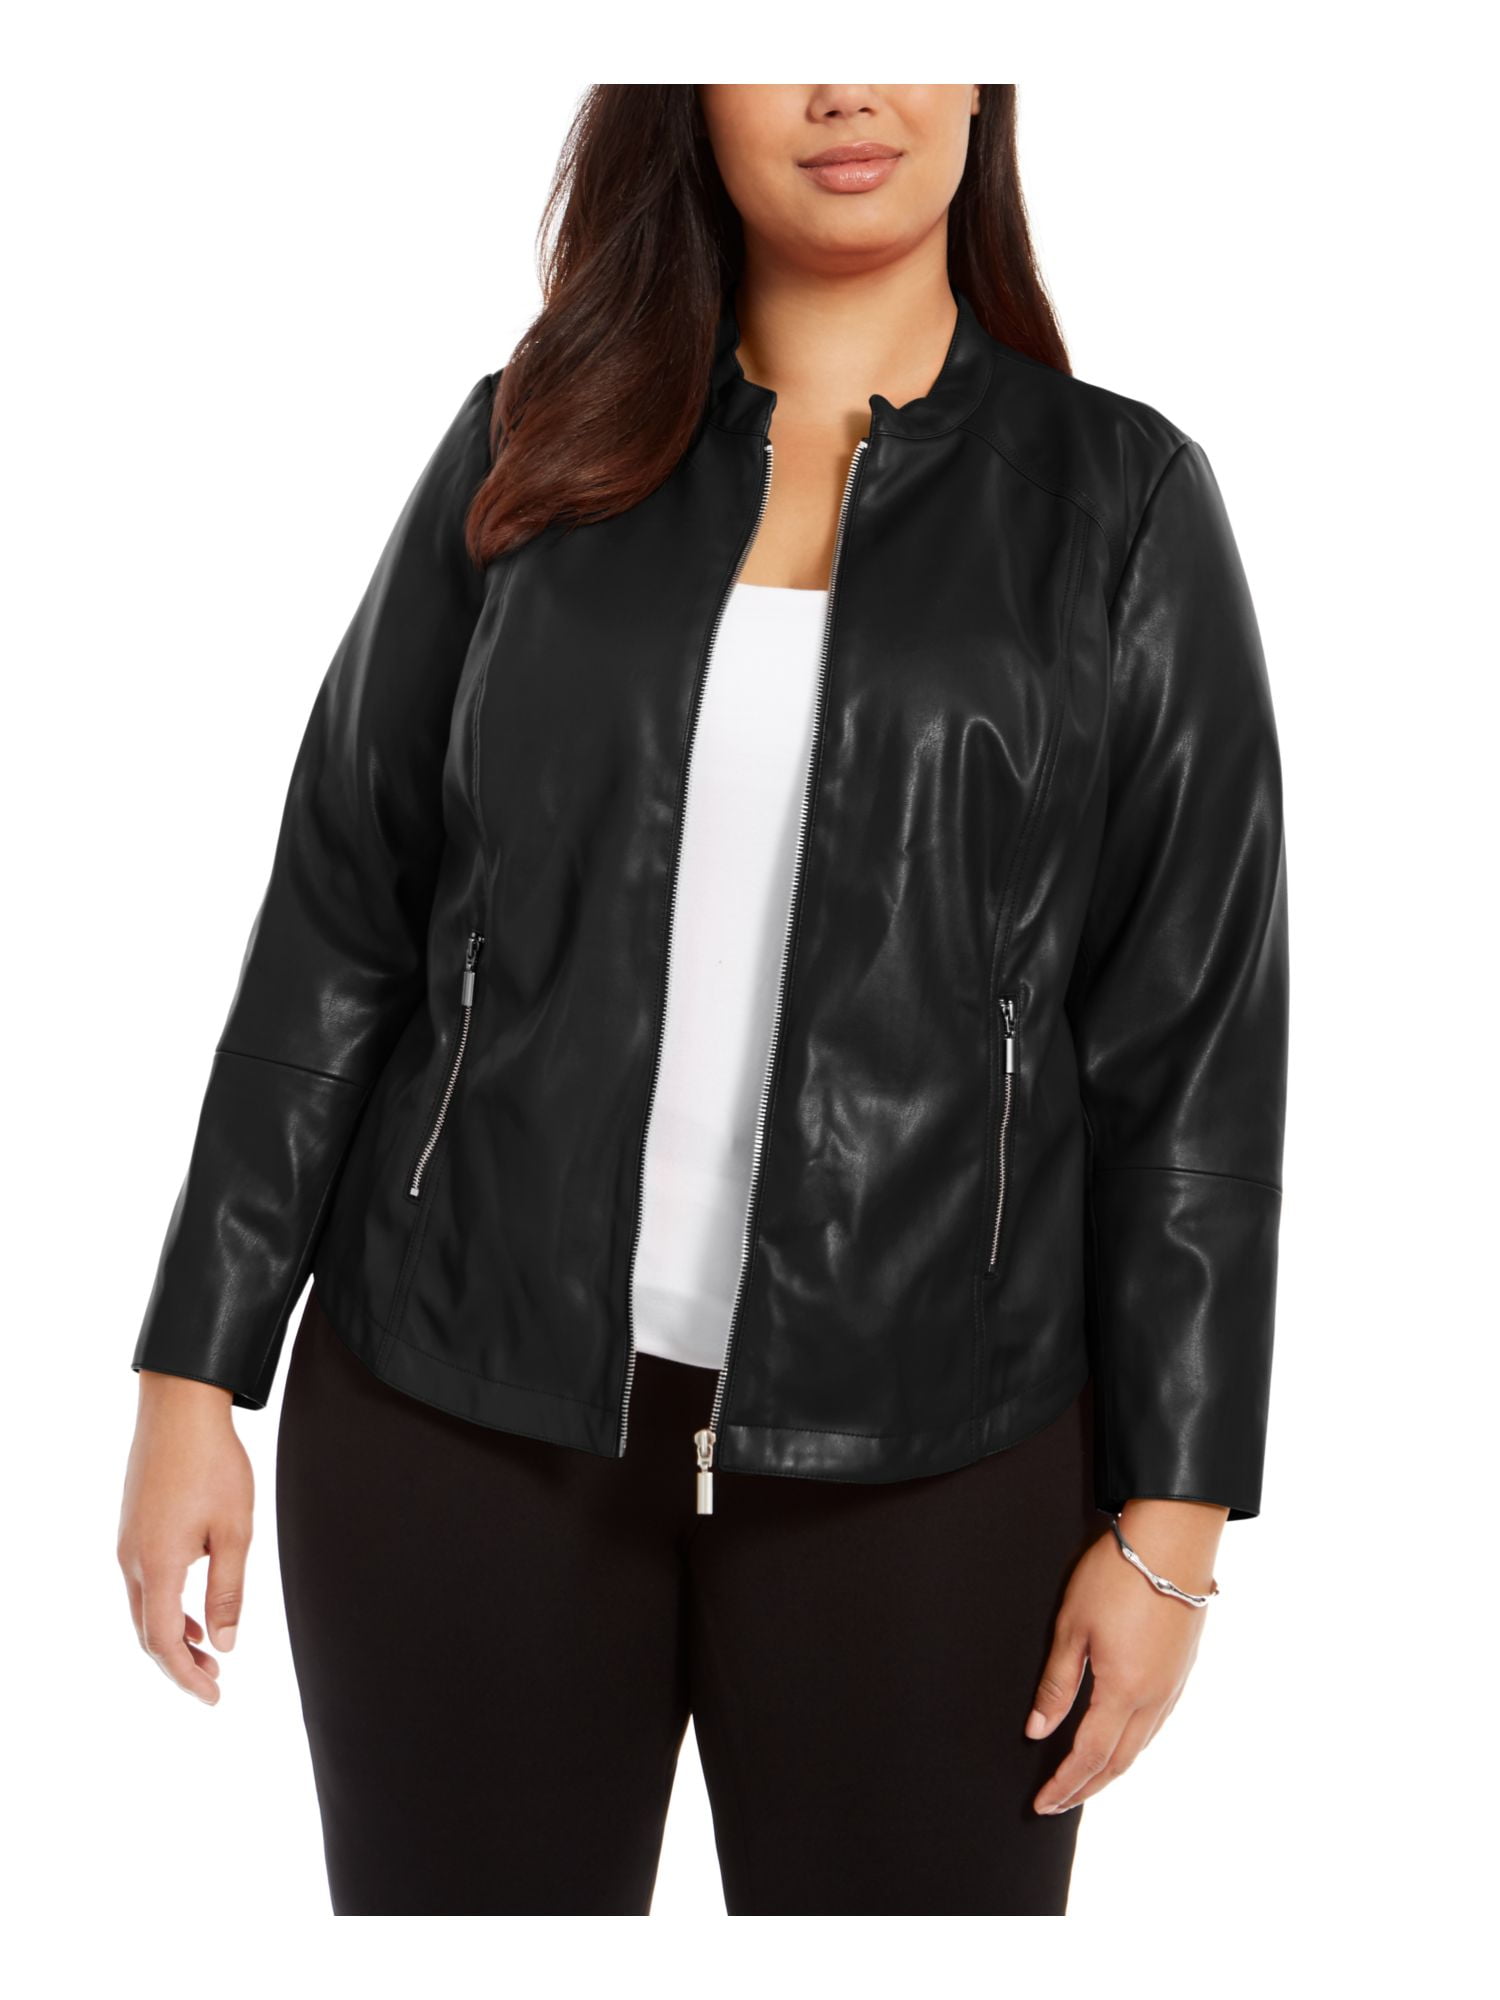 Alfani - ALFANI Womens Black Faux Leather Zip Up Jacket Size 3X ...